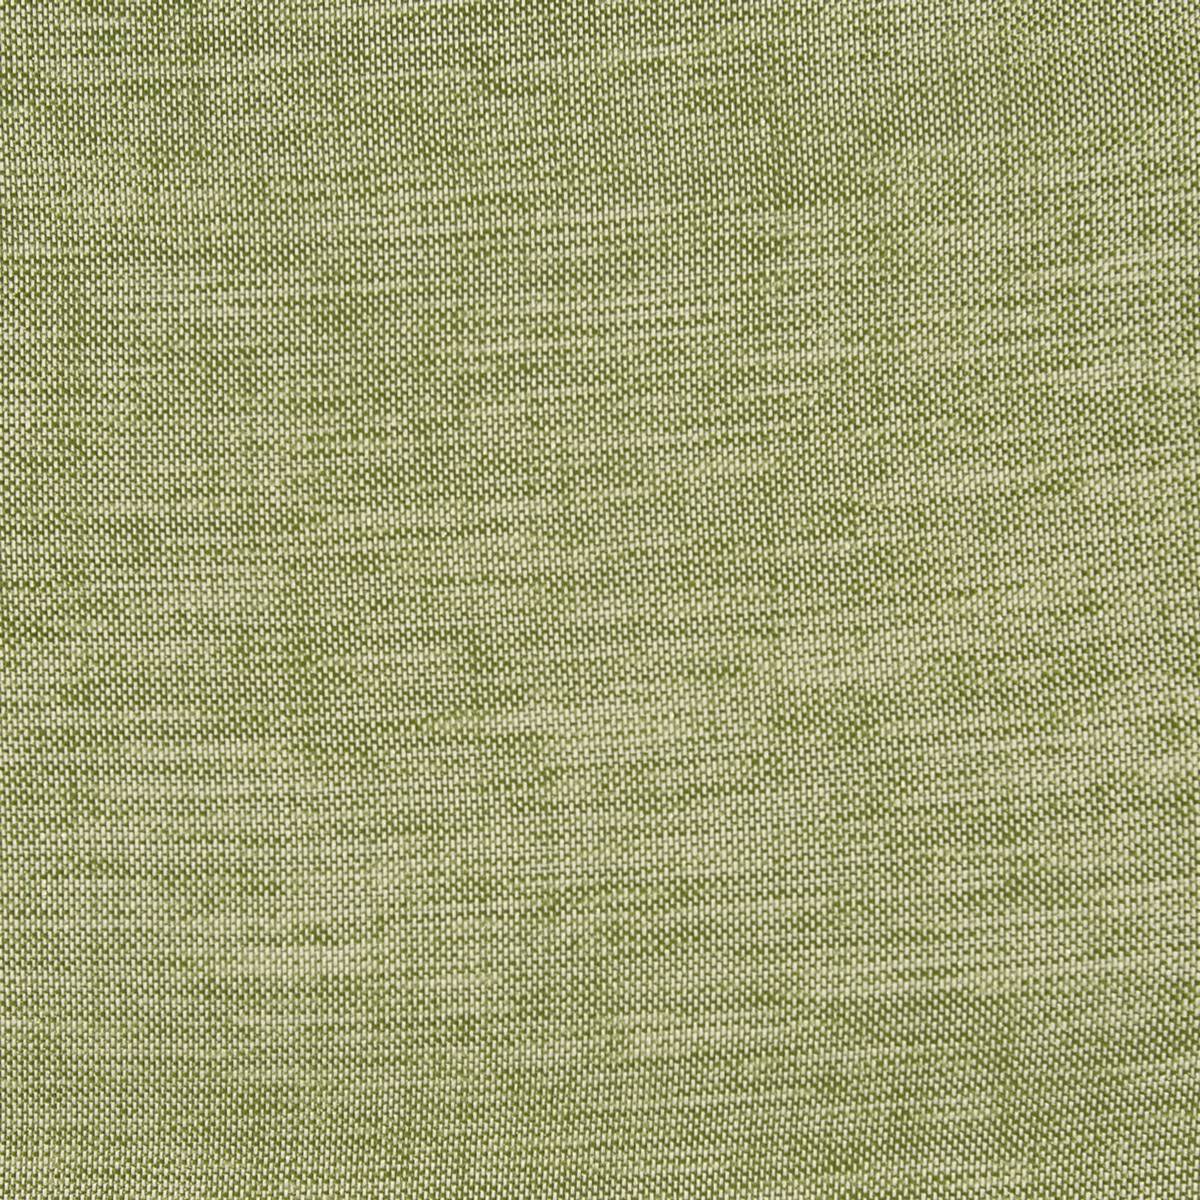 Fenchurch Leaf Fabric by Prestigious Textiles